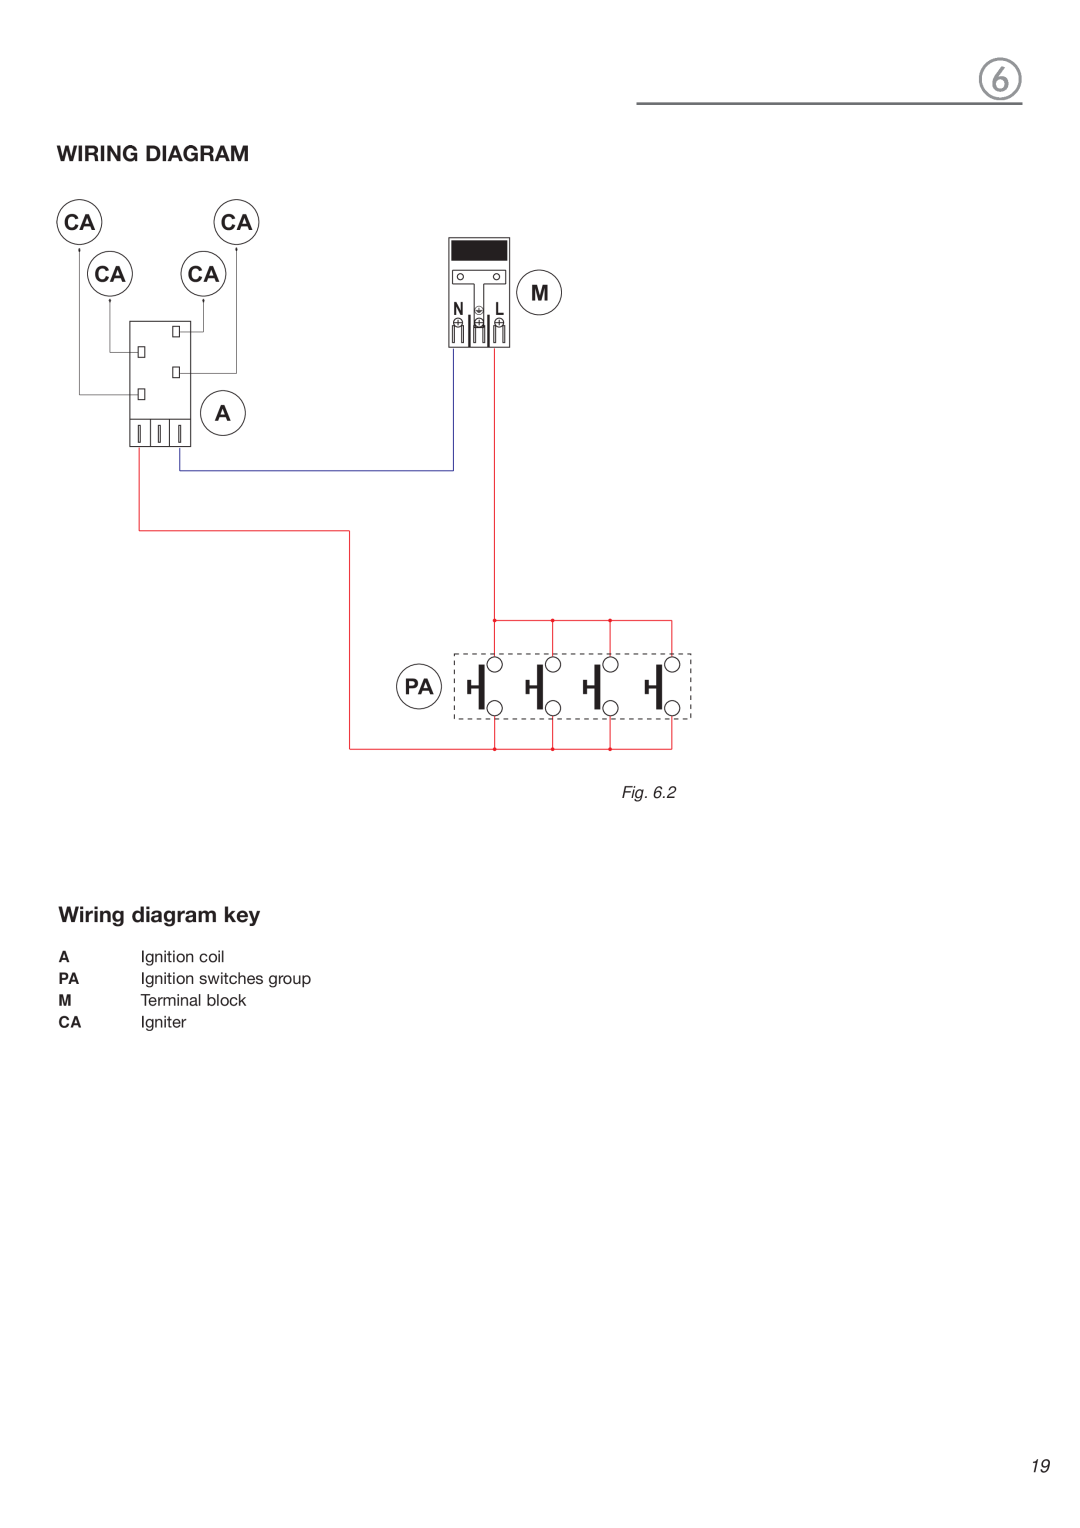 Verona VEGCT424F warranty Wiring Diagram Caca Ca Ca A, Wiring diagram key 